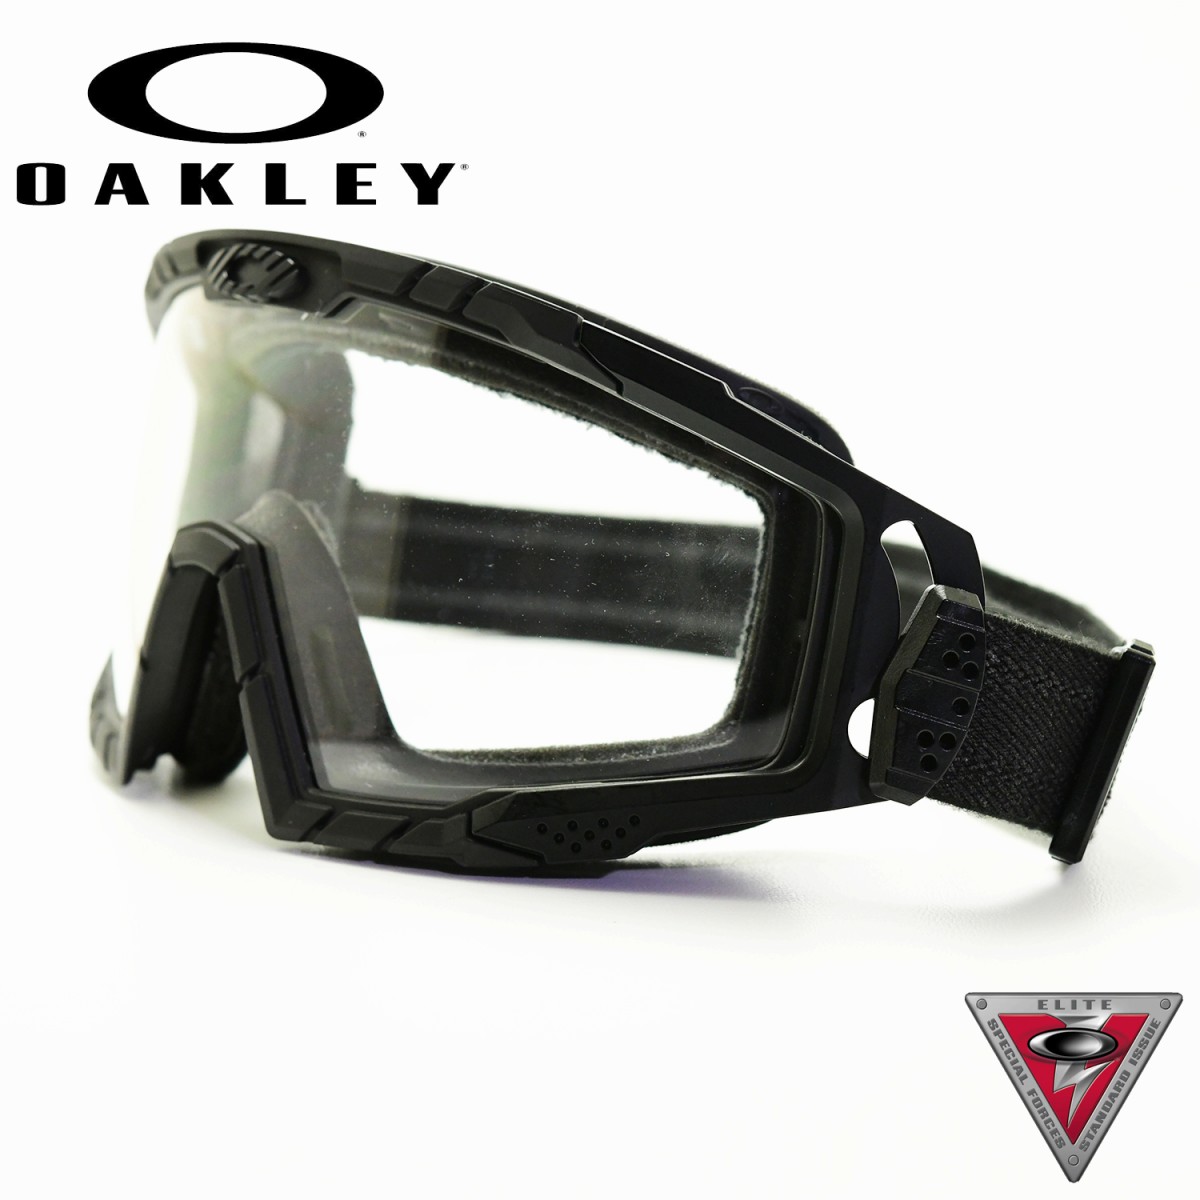 Oakley goggle